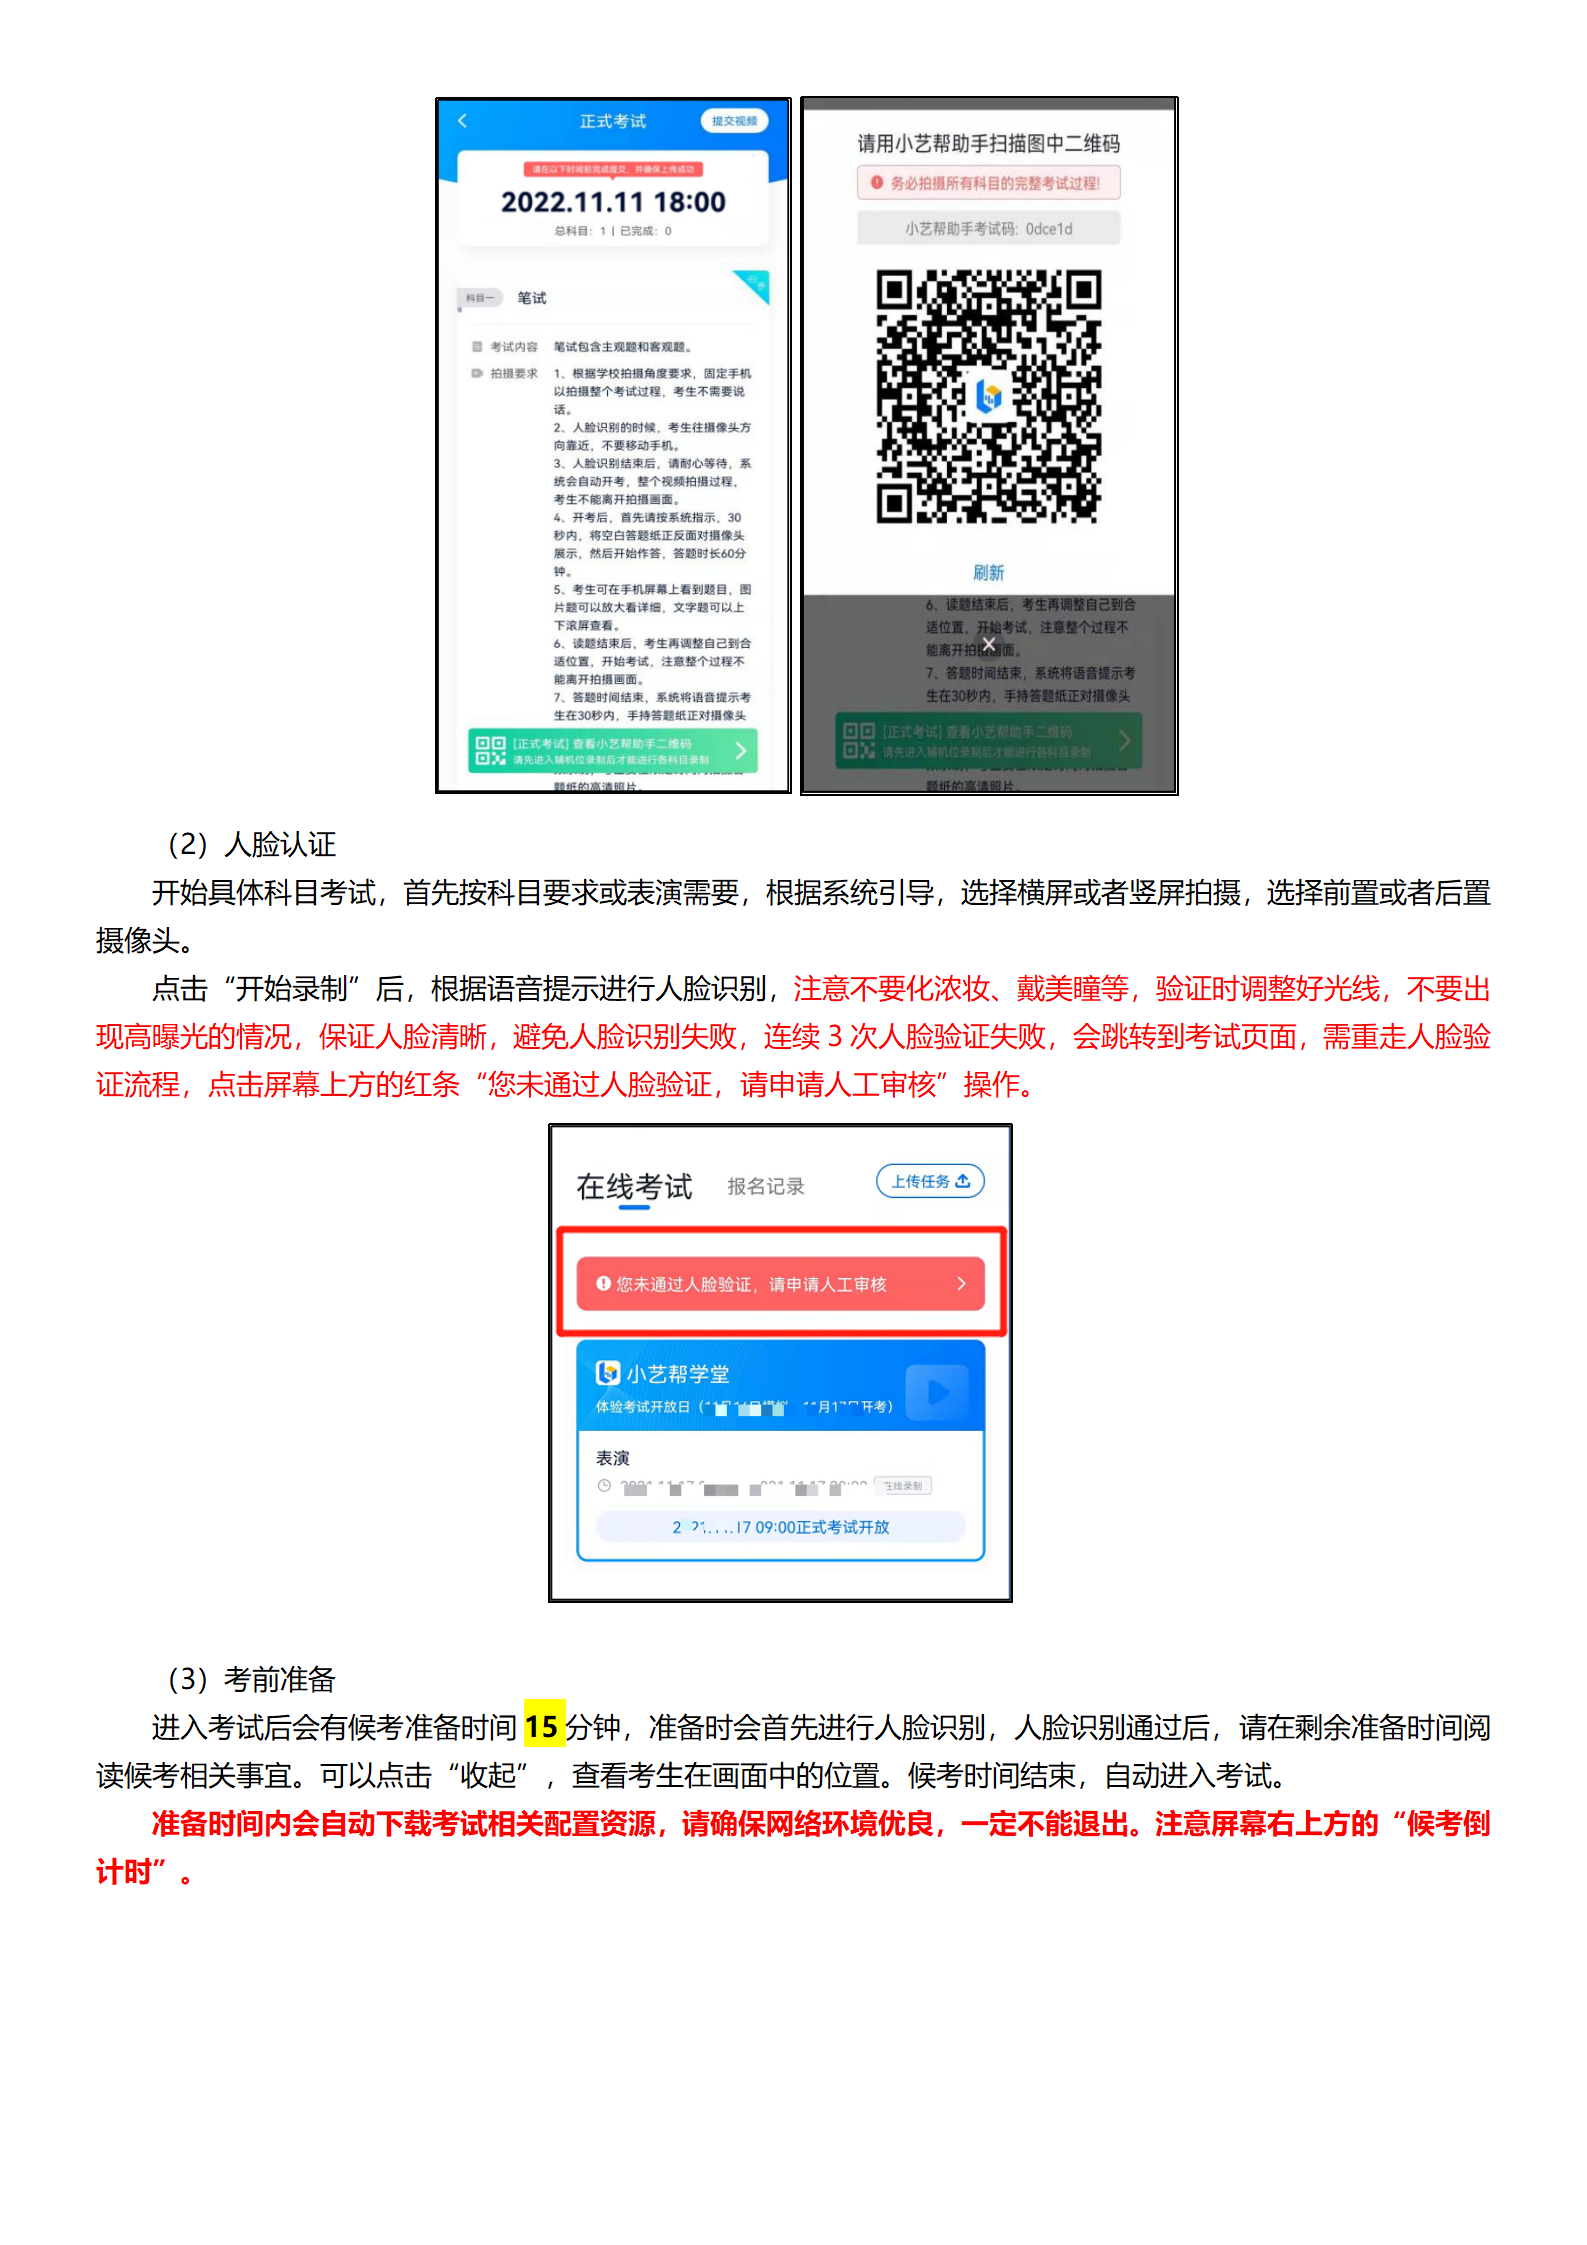 西安培华学院小艺帮4.0及小艺帮助手用户操作手册_14.png